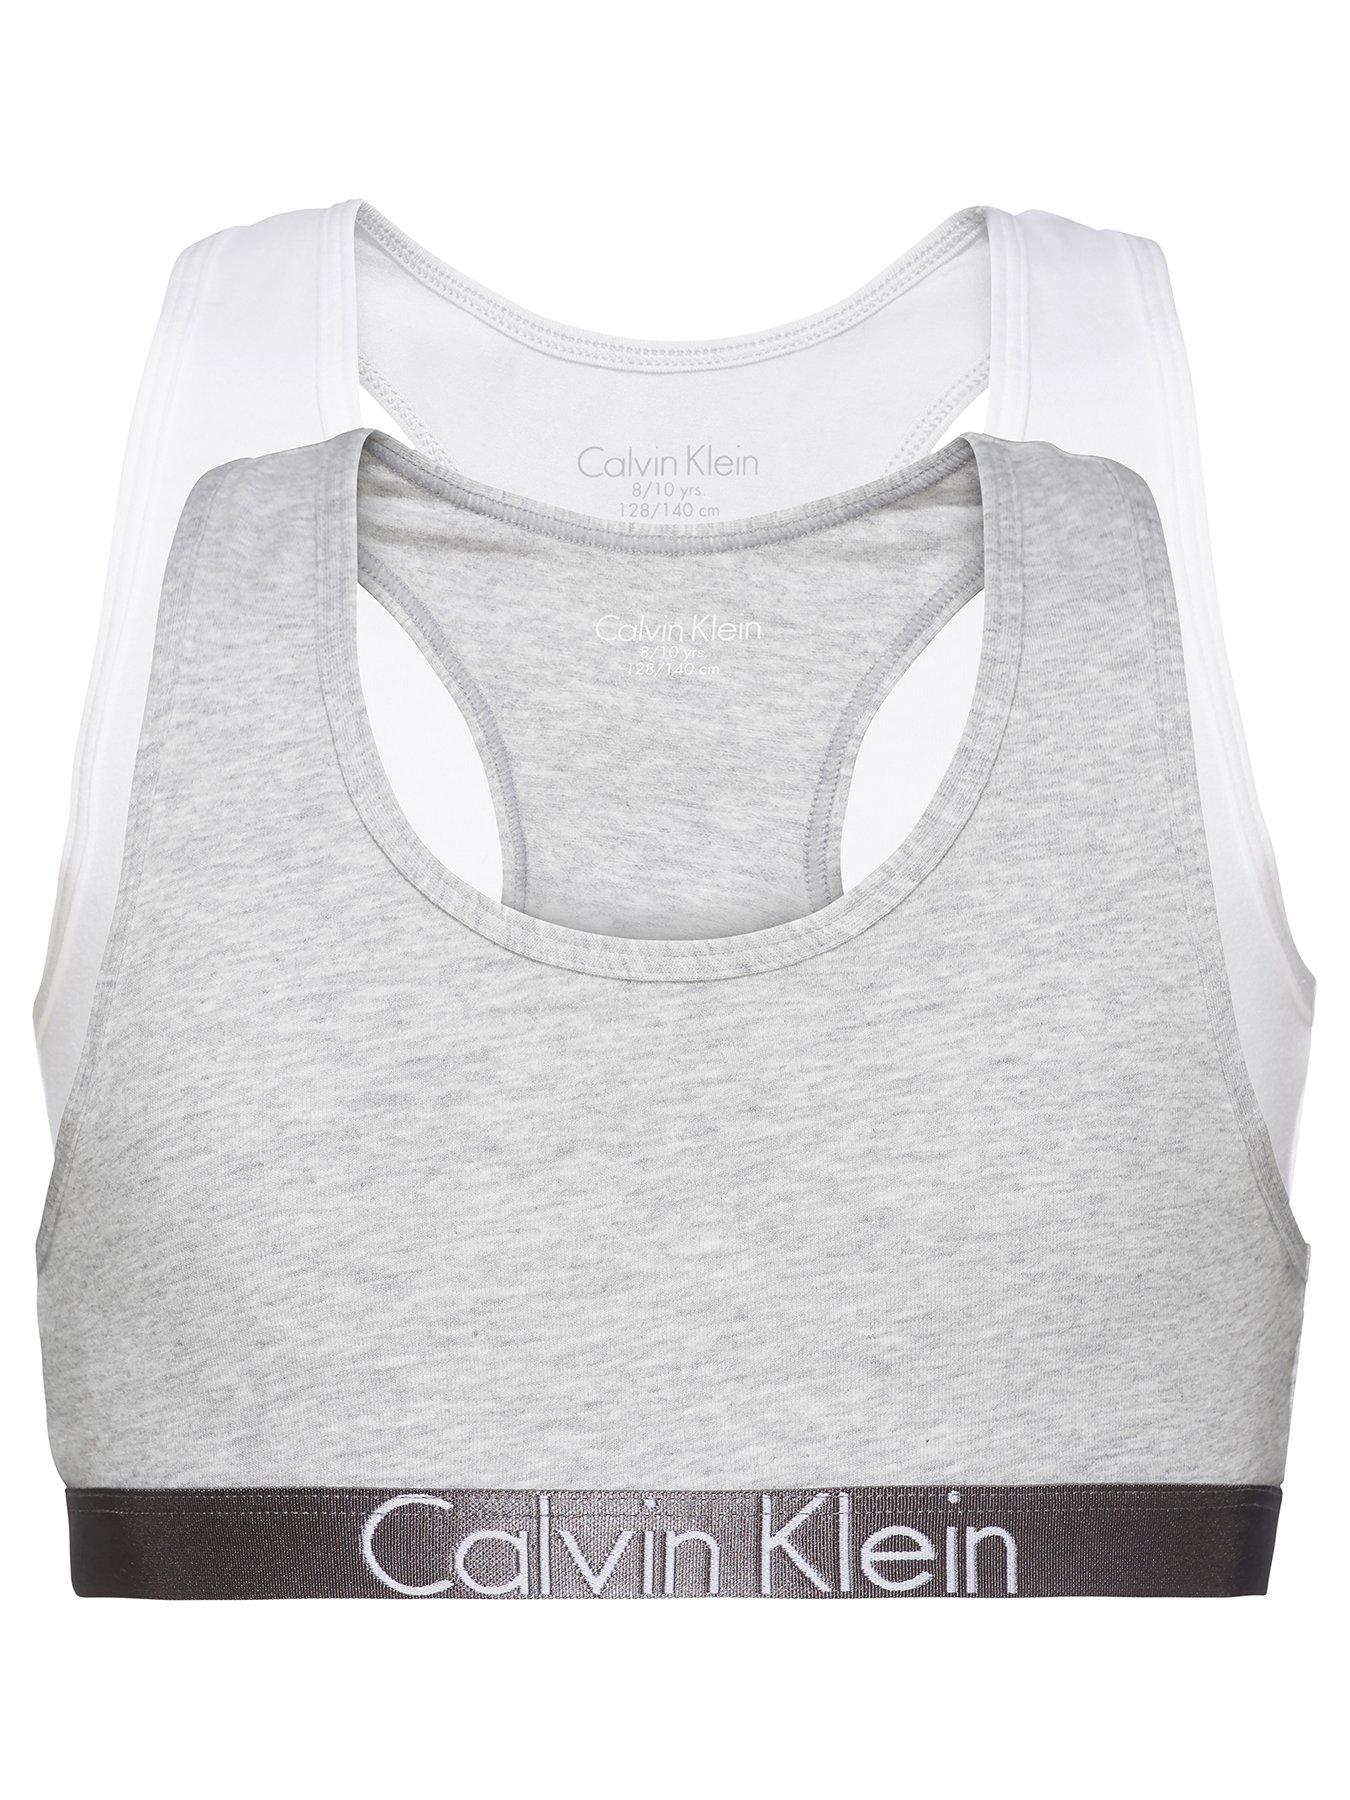 Calvin Klein Girls White Bra Tops (2-Pack)